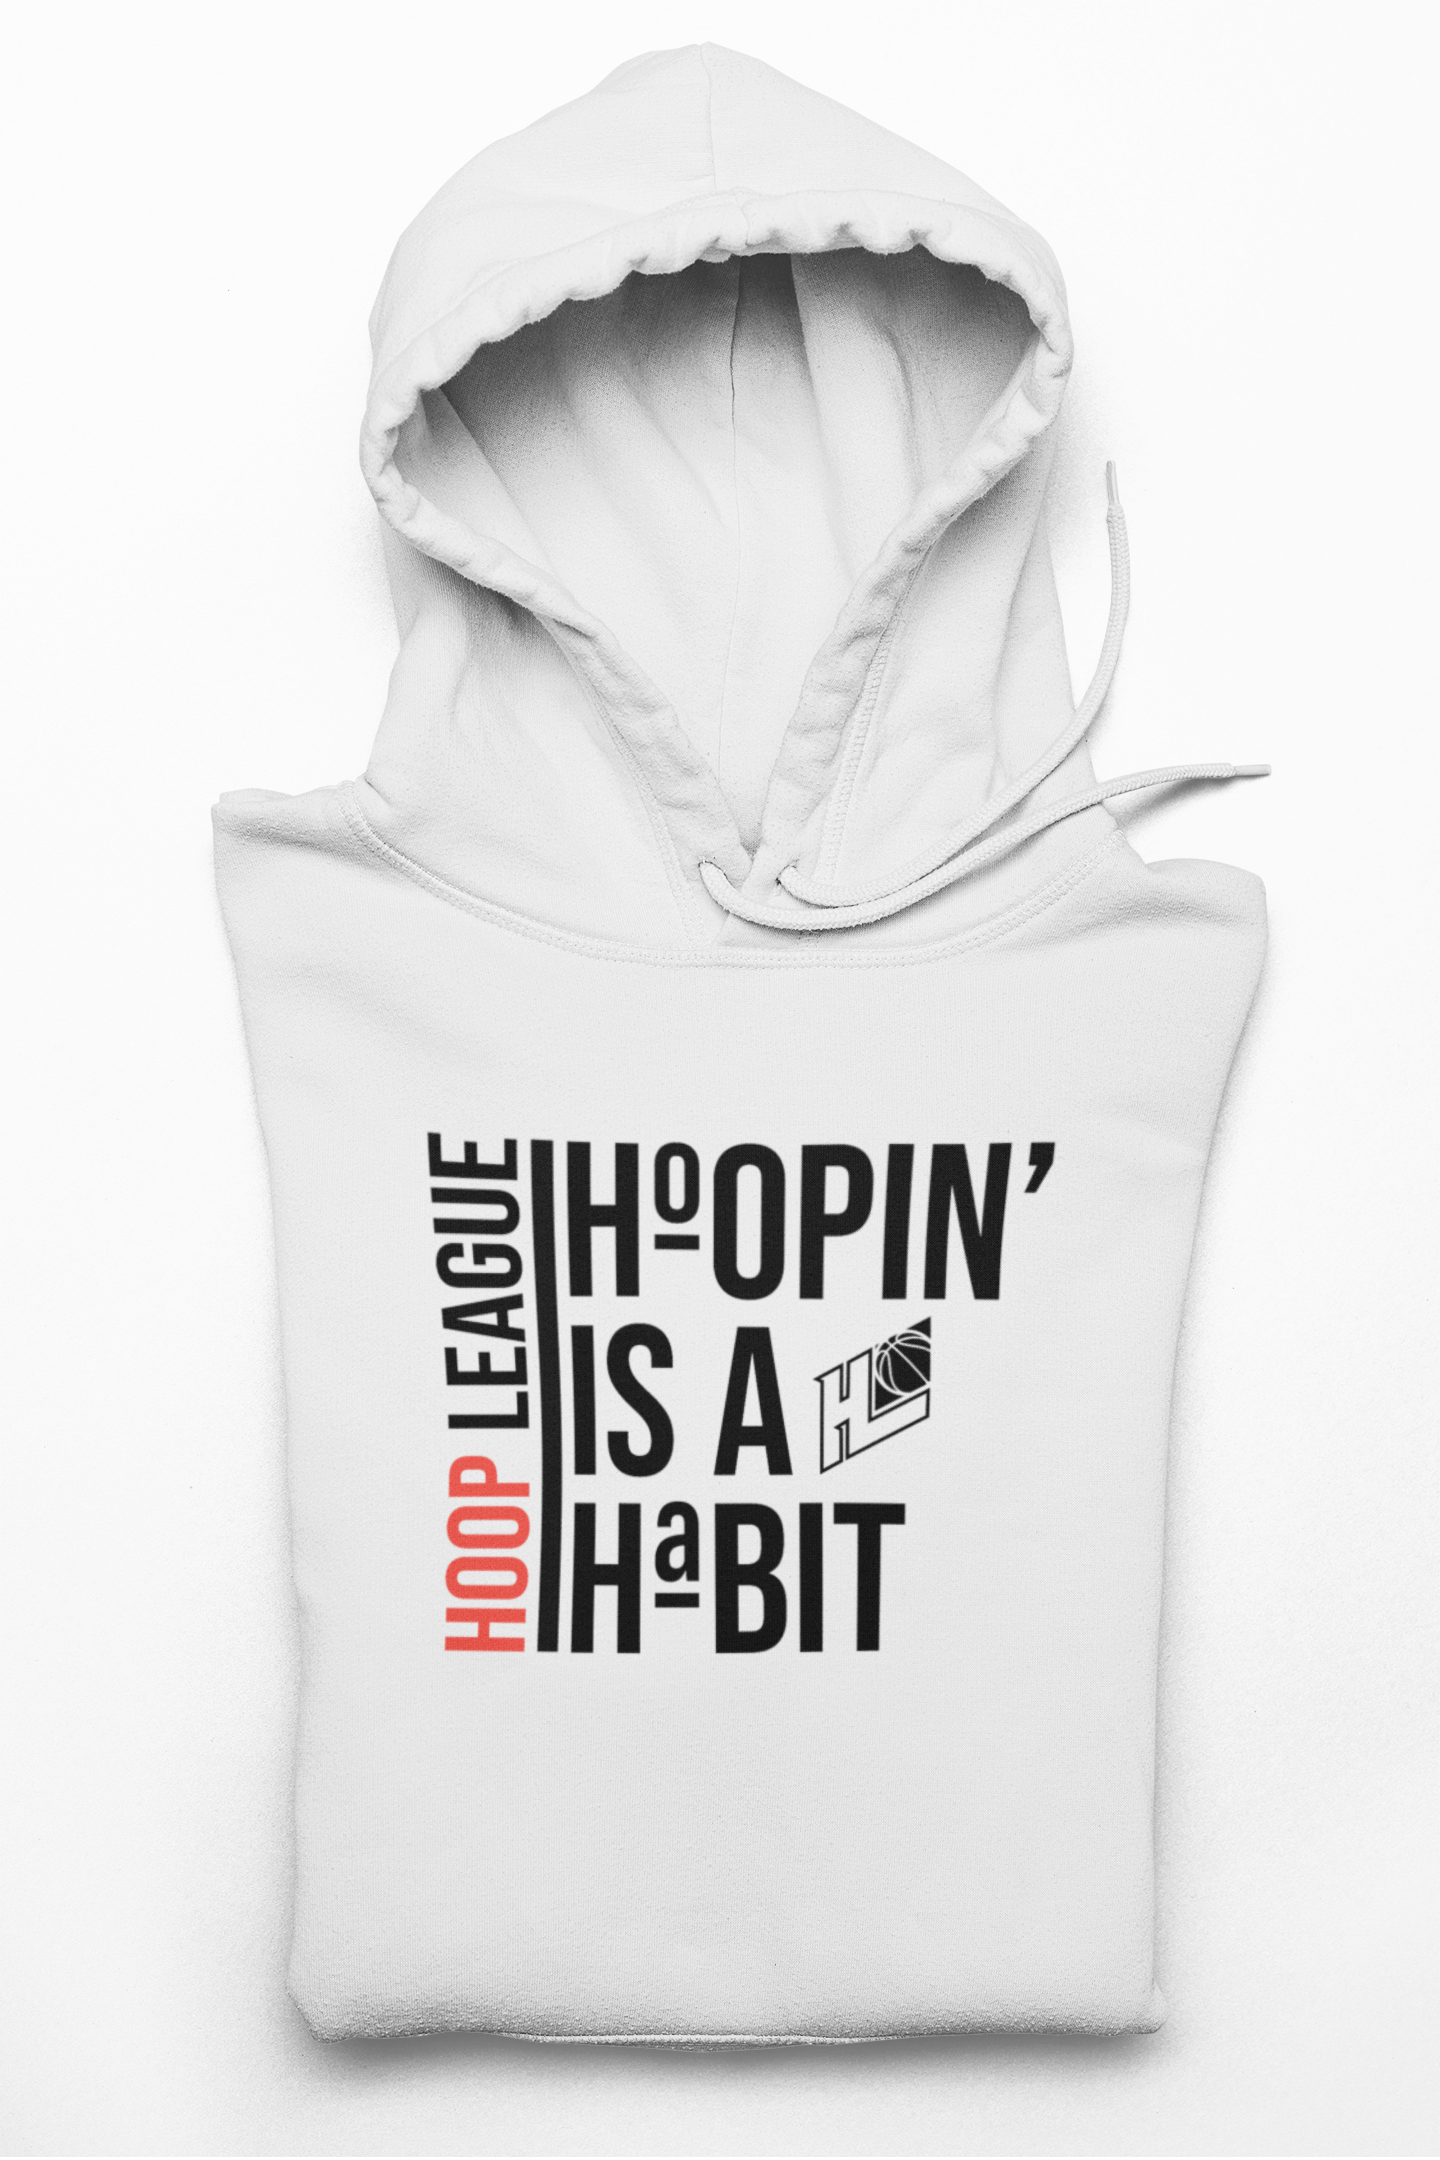 Hoopin' is a Habit Hoodie | Premium Hoodie